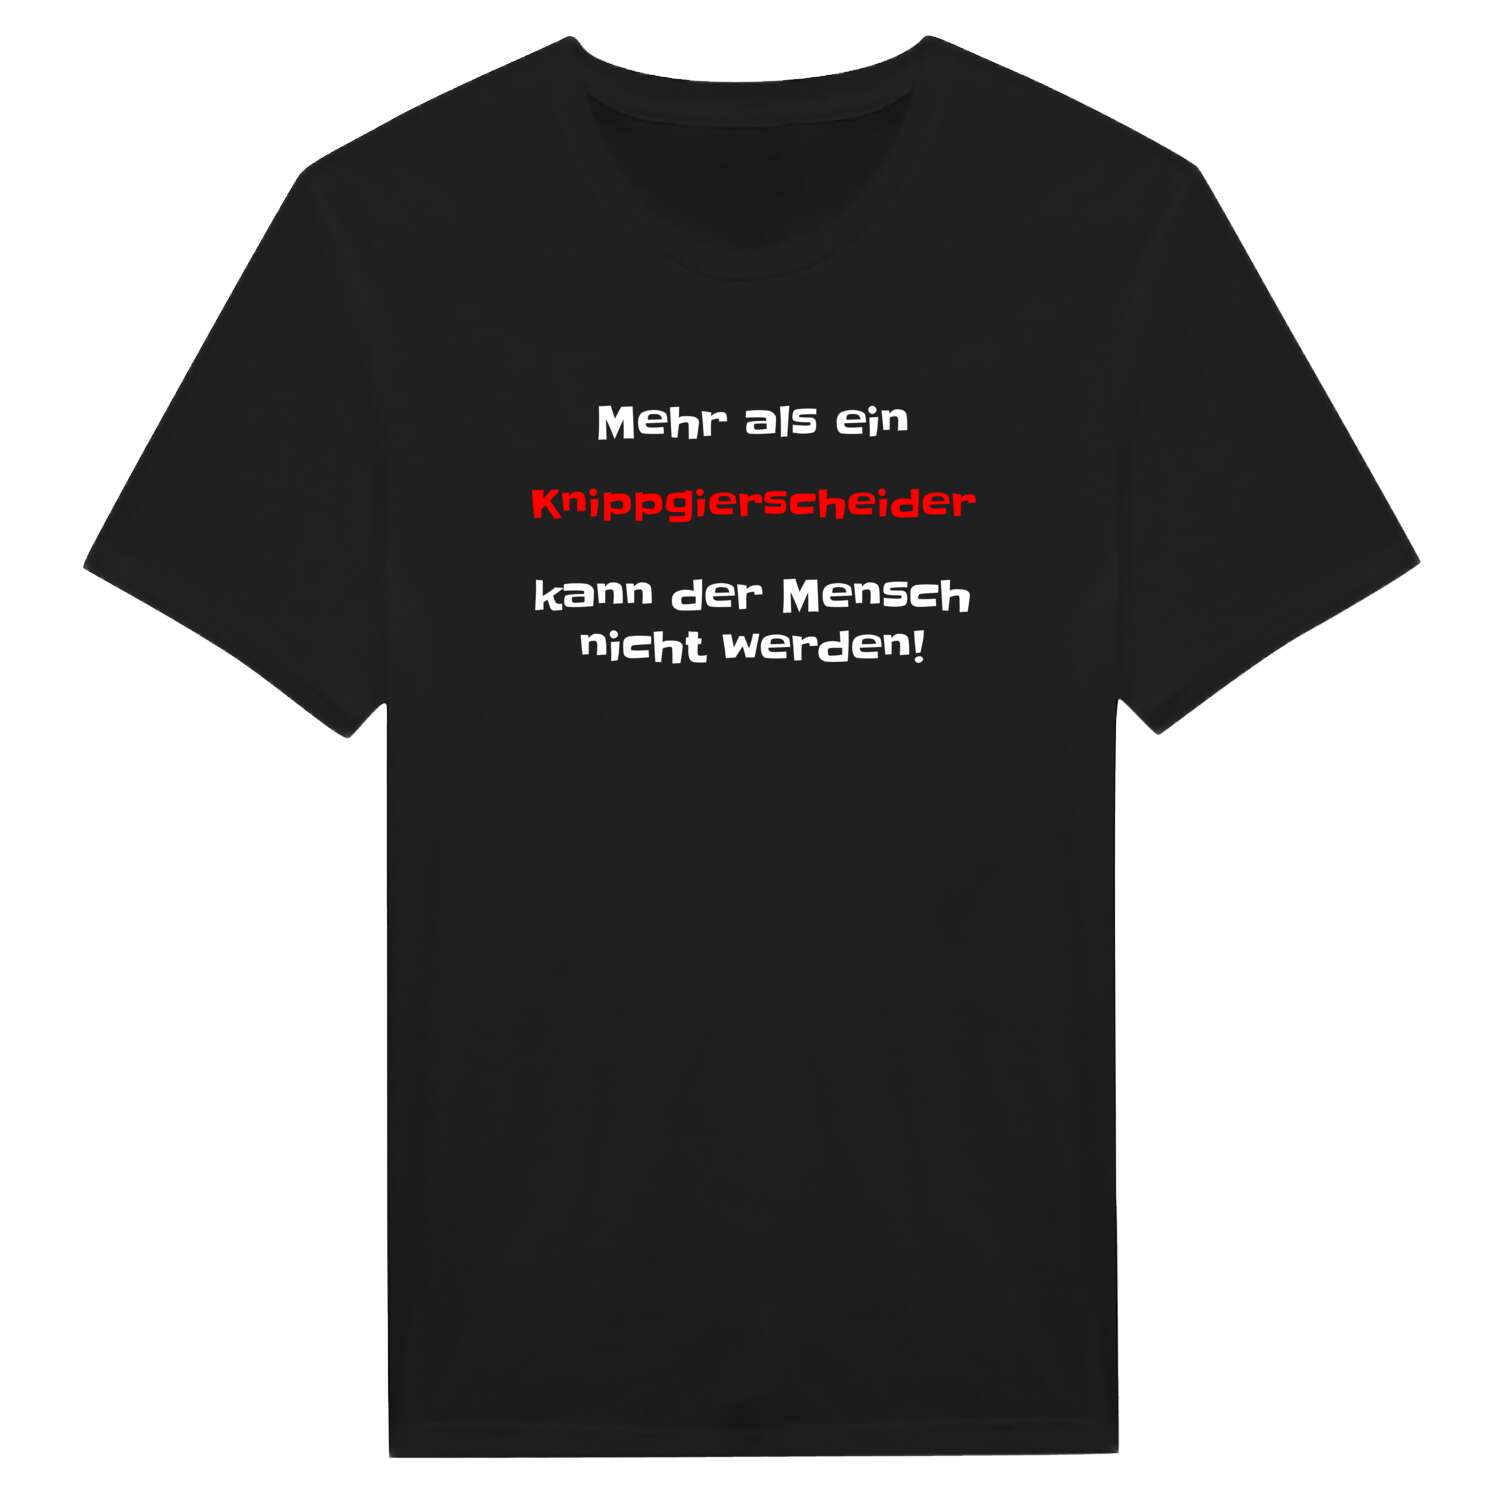 Knippgierscheid T-Shirt »Mehr als ein«